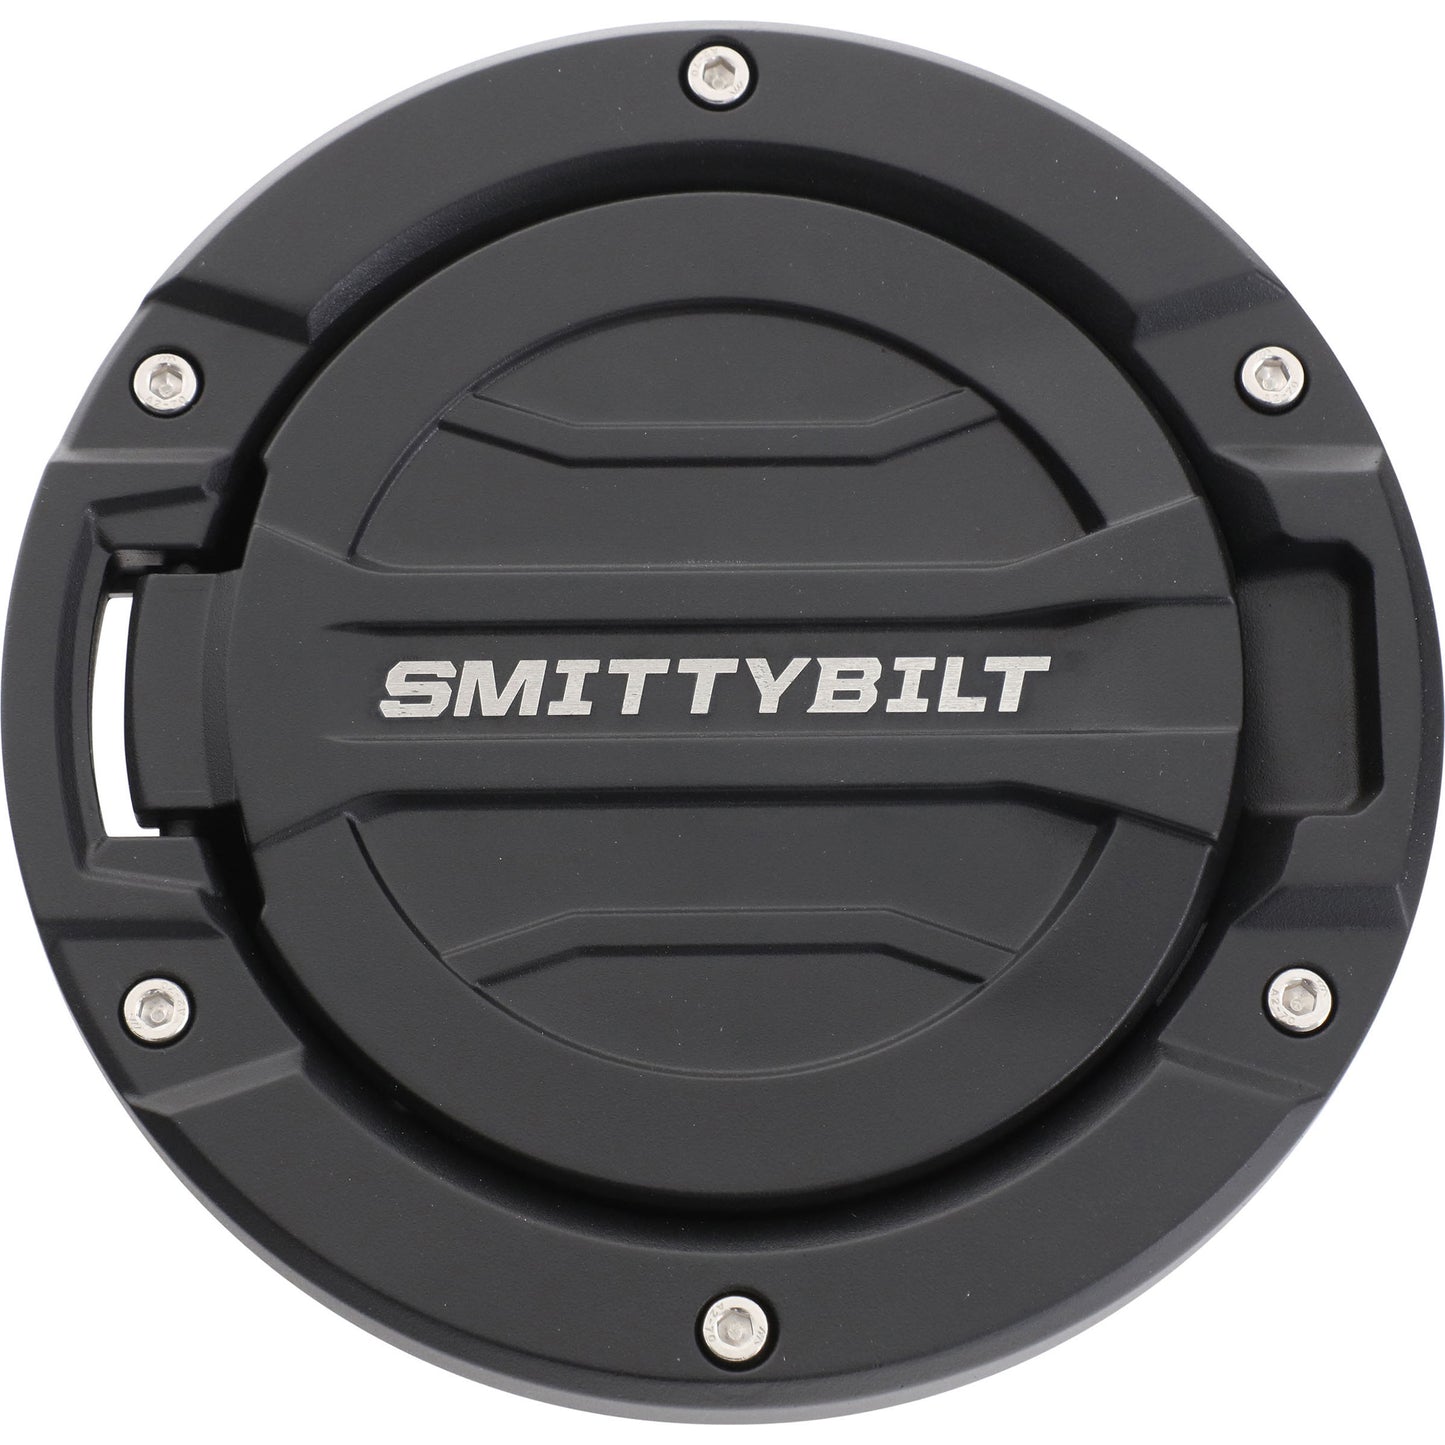 Smittybilt 75008 Smittybilt Billet Gas Cover - 75008